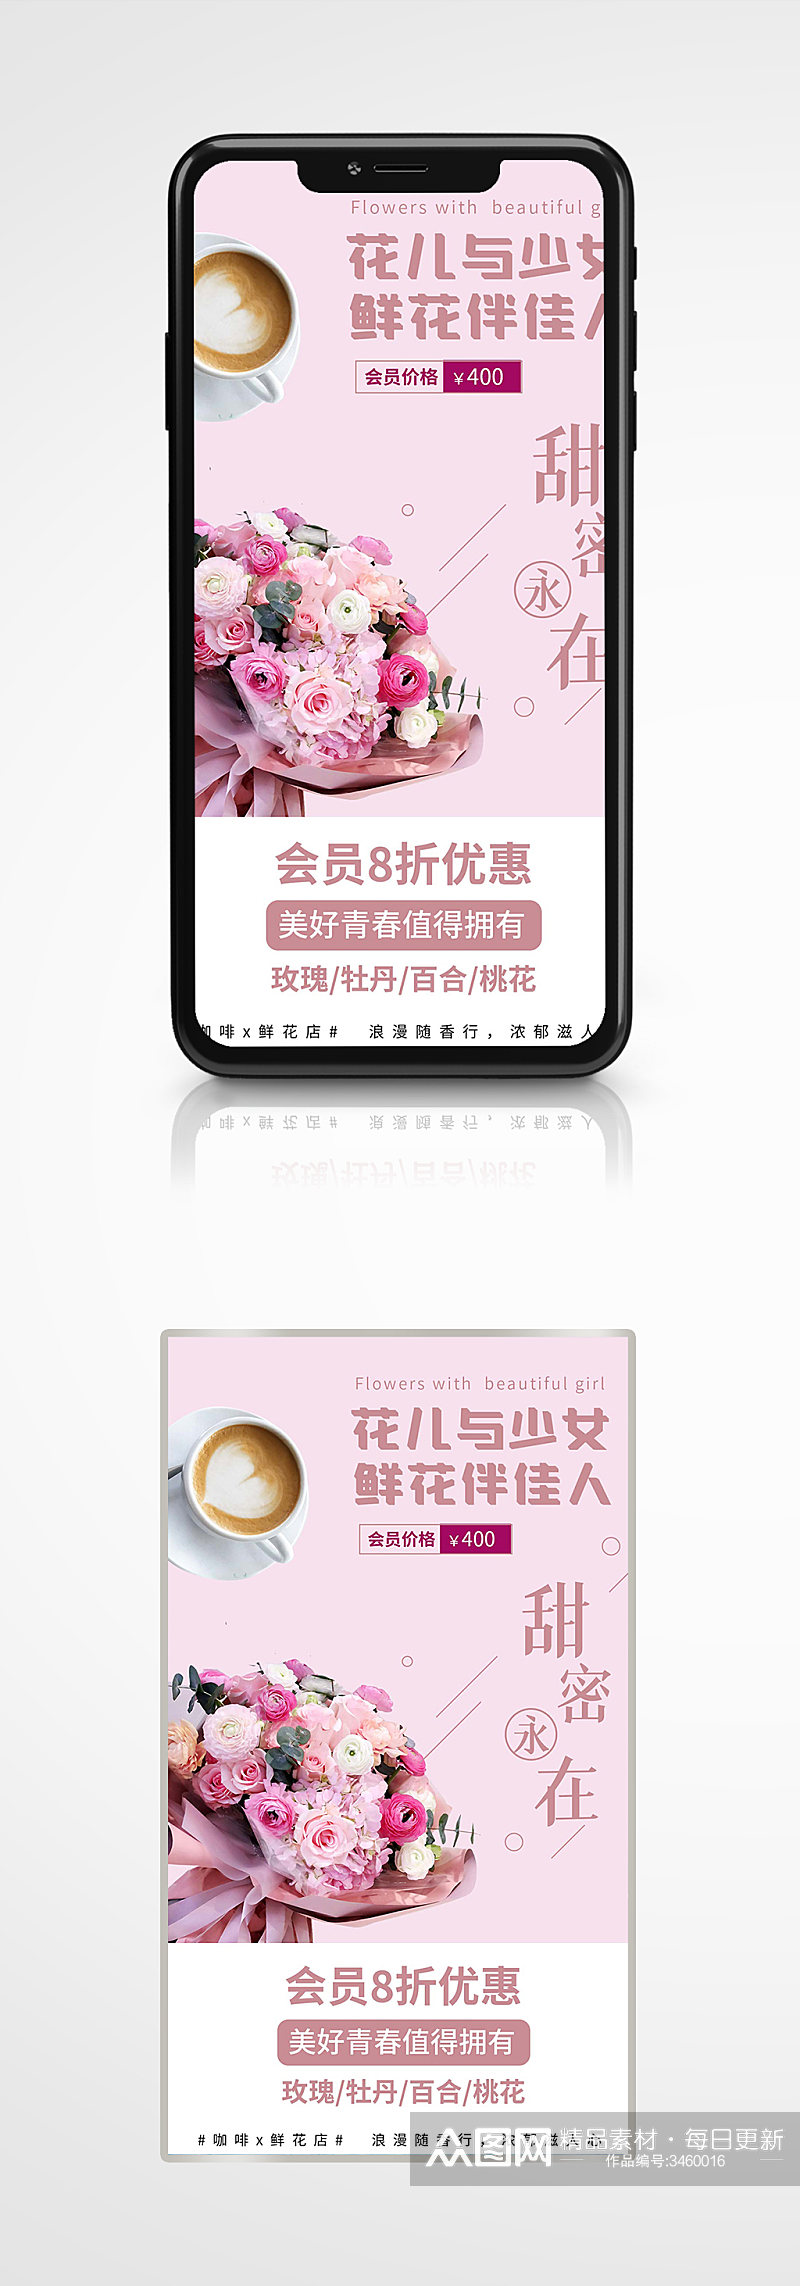 新媒体浪漫温馨鲜花店促销活动海报粉色素材